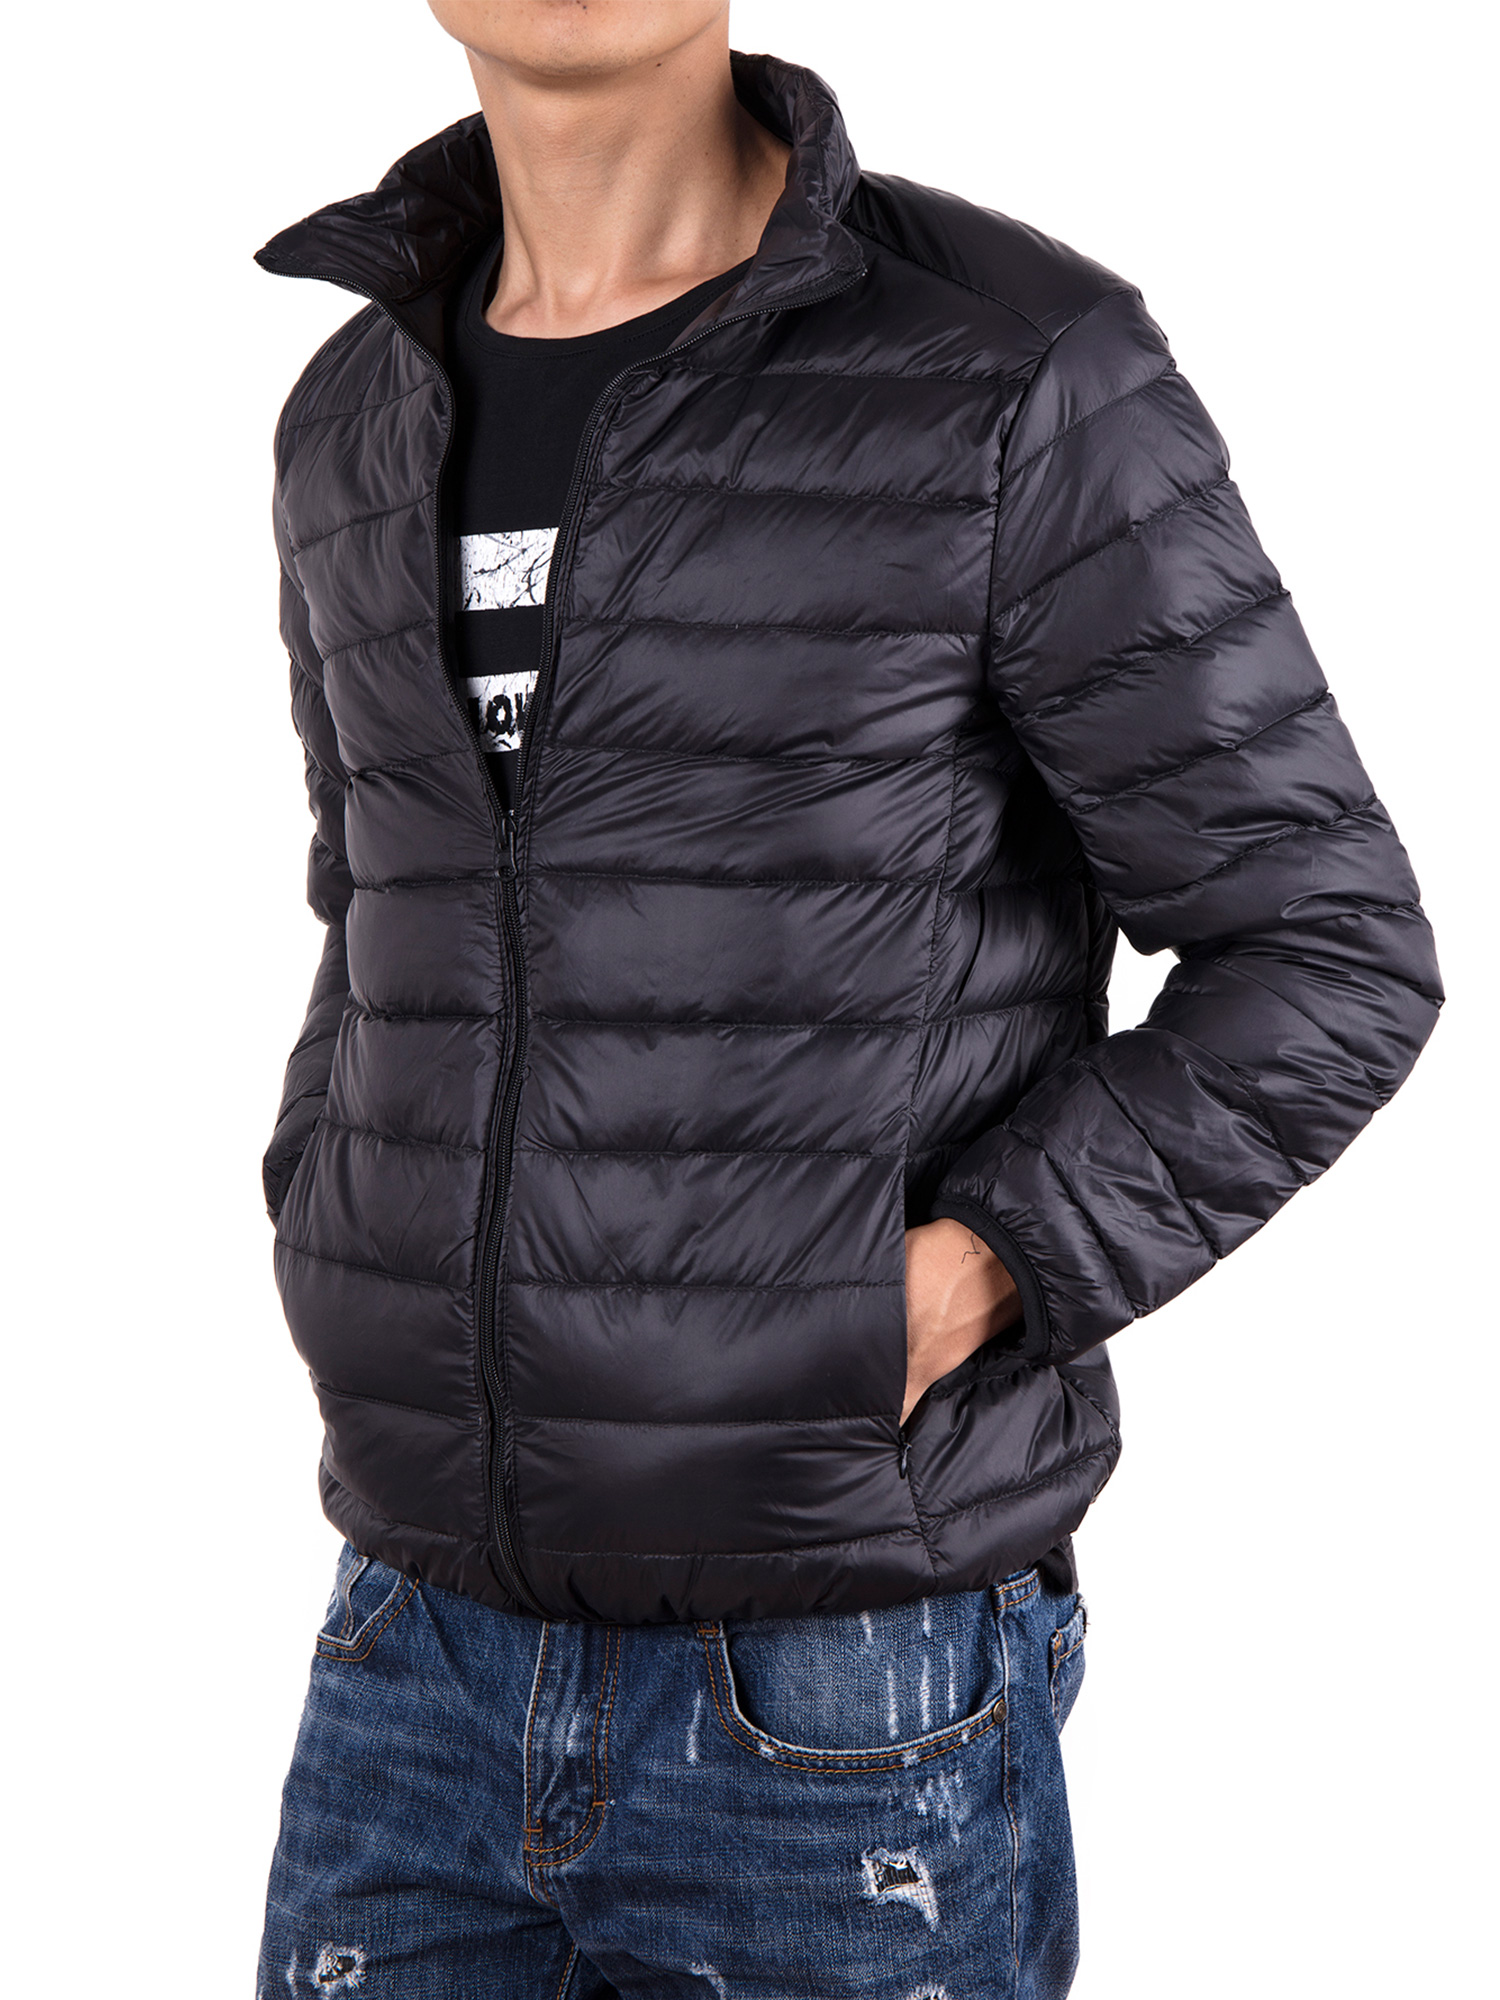 Men Down Jacket Outwear Puffer Coats Casual Zip Up Windbreaker Lightweight Winter Jackets Black - image 5 of 8